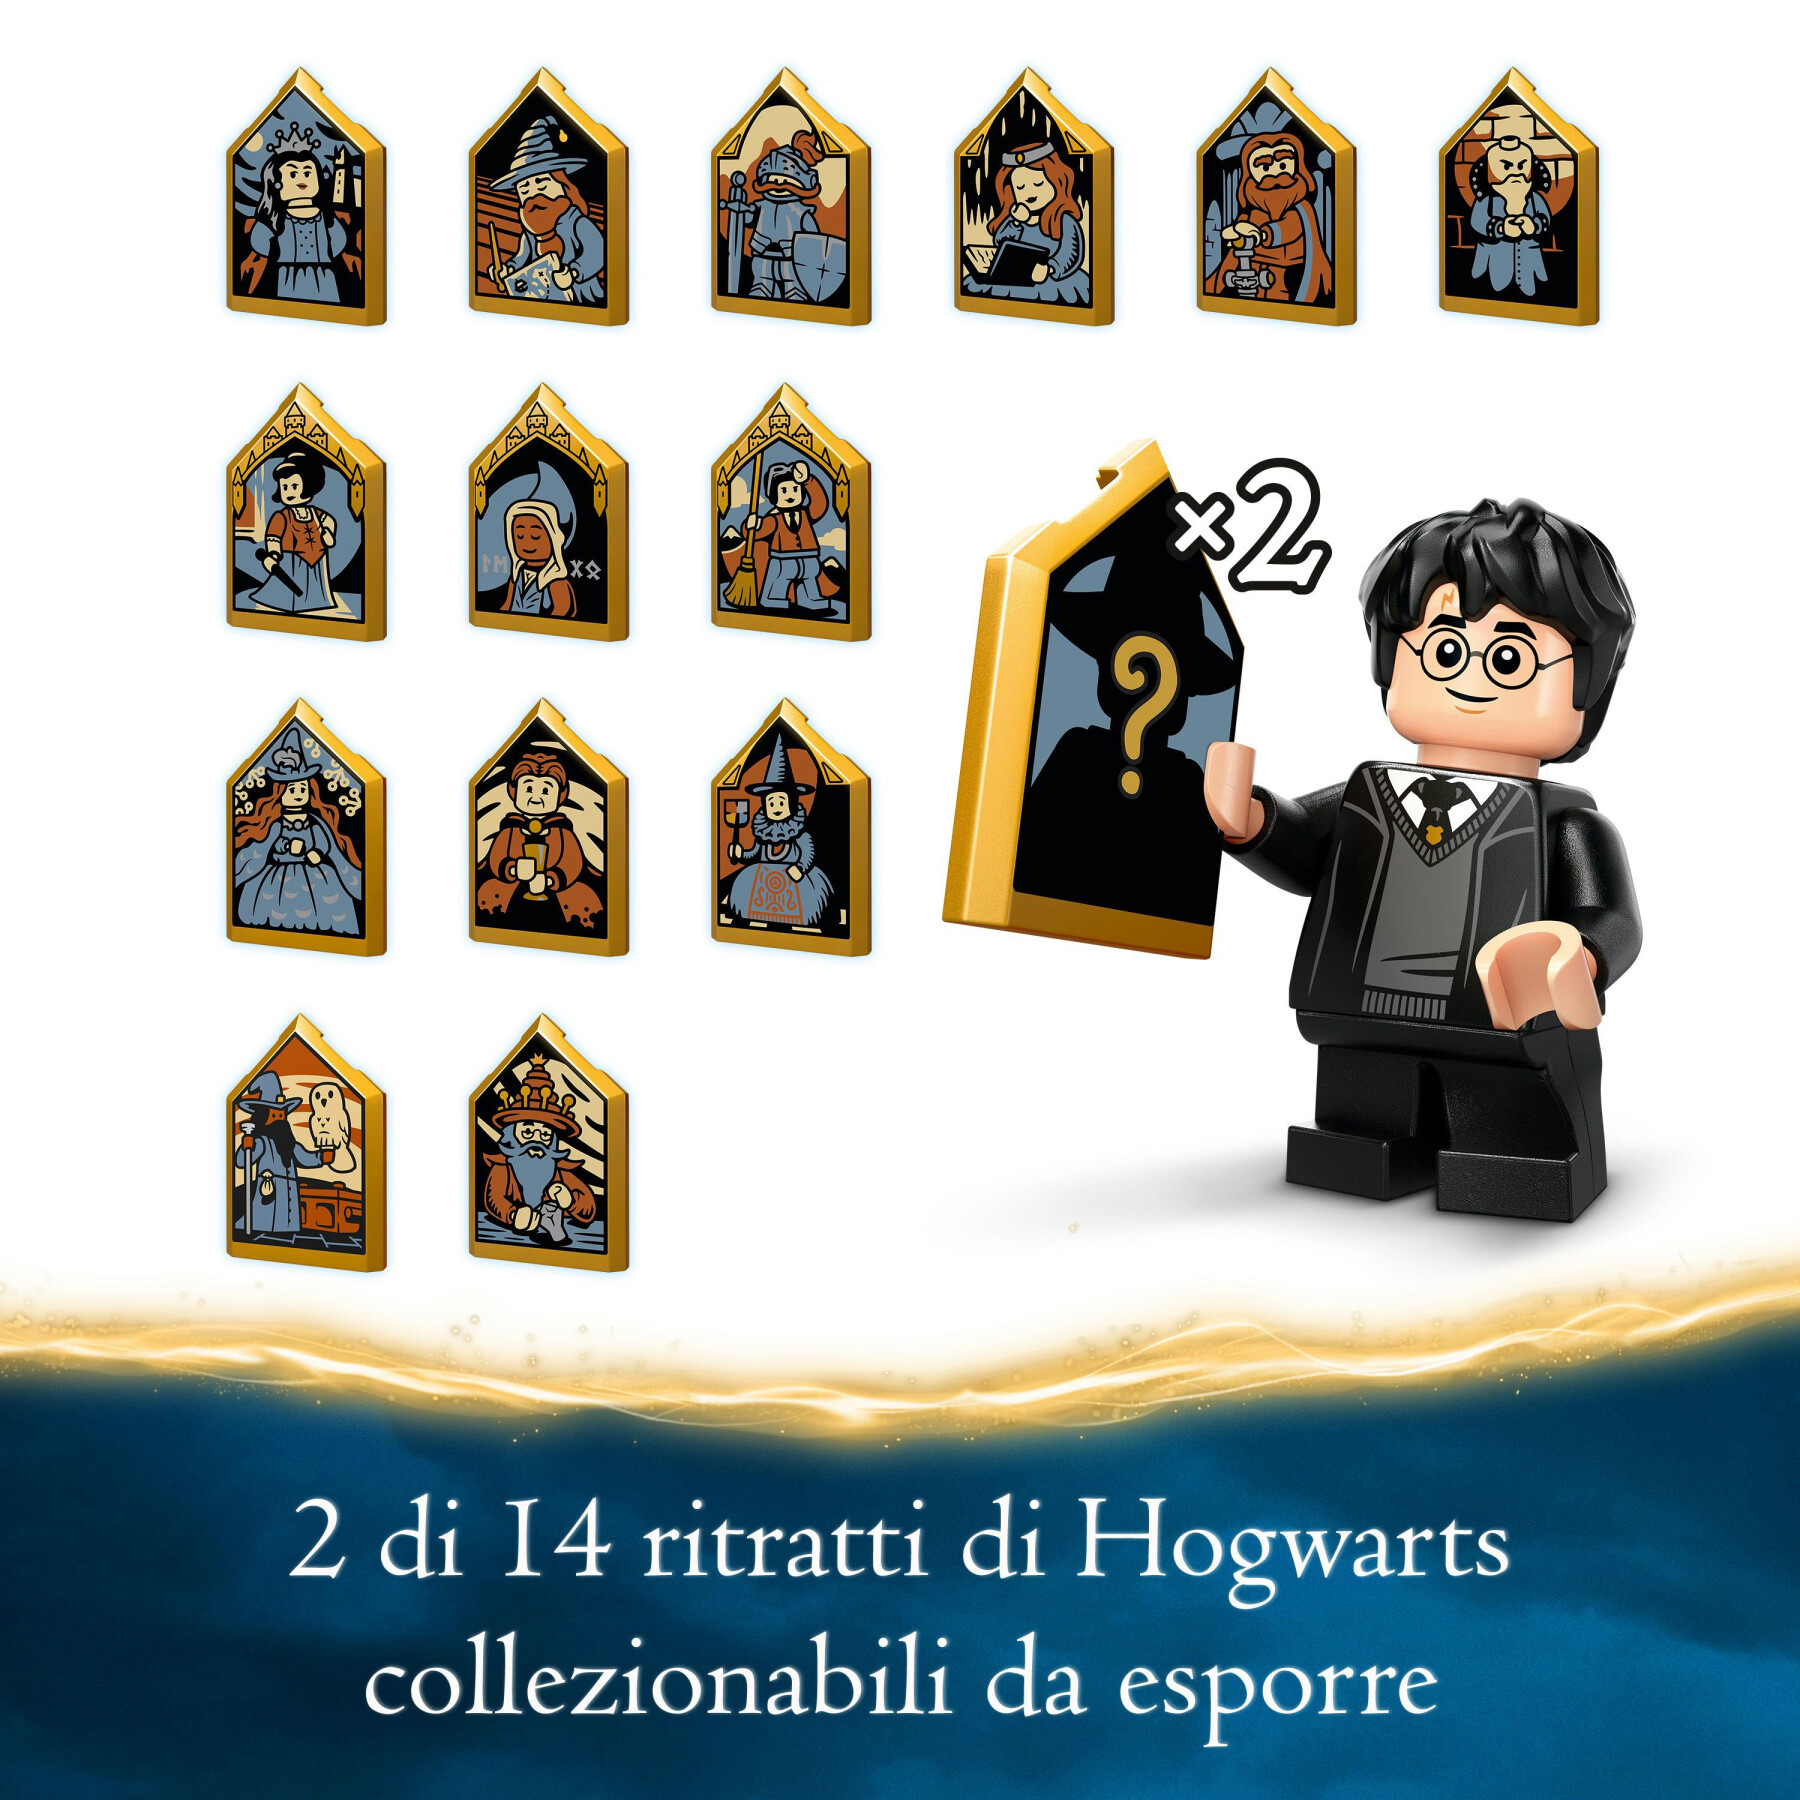 Lego harry potter 76431 castello di hogwarts: lezione di pozioni giocattolo, giochi bambini per 8+, idea regalo da collezione - LEGO® Harry Potter™